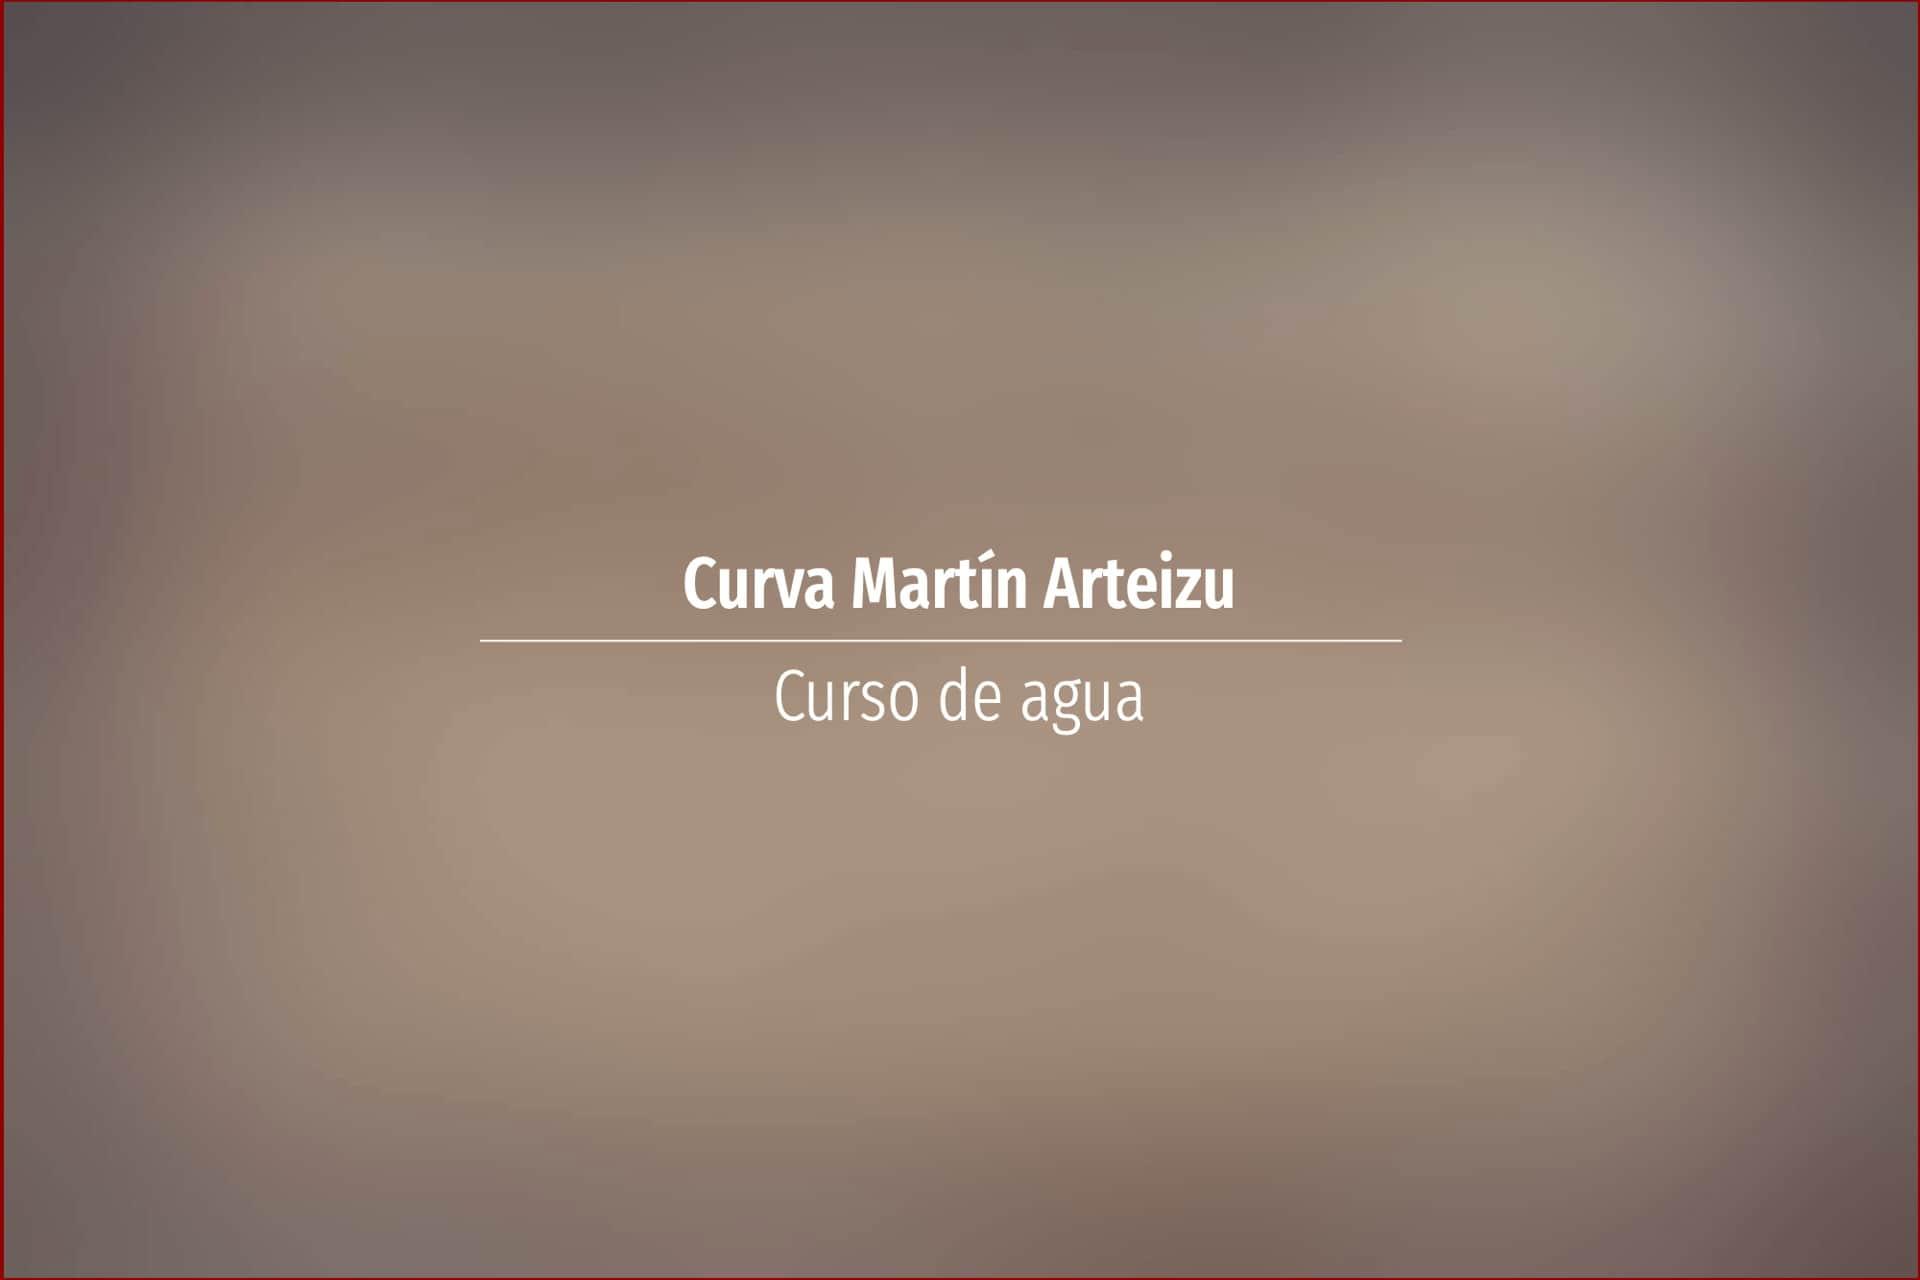 Curva Martín Arteizu